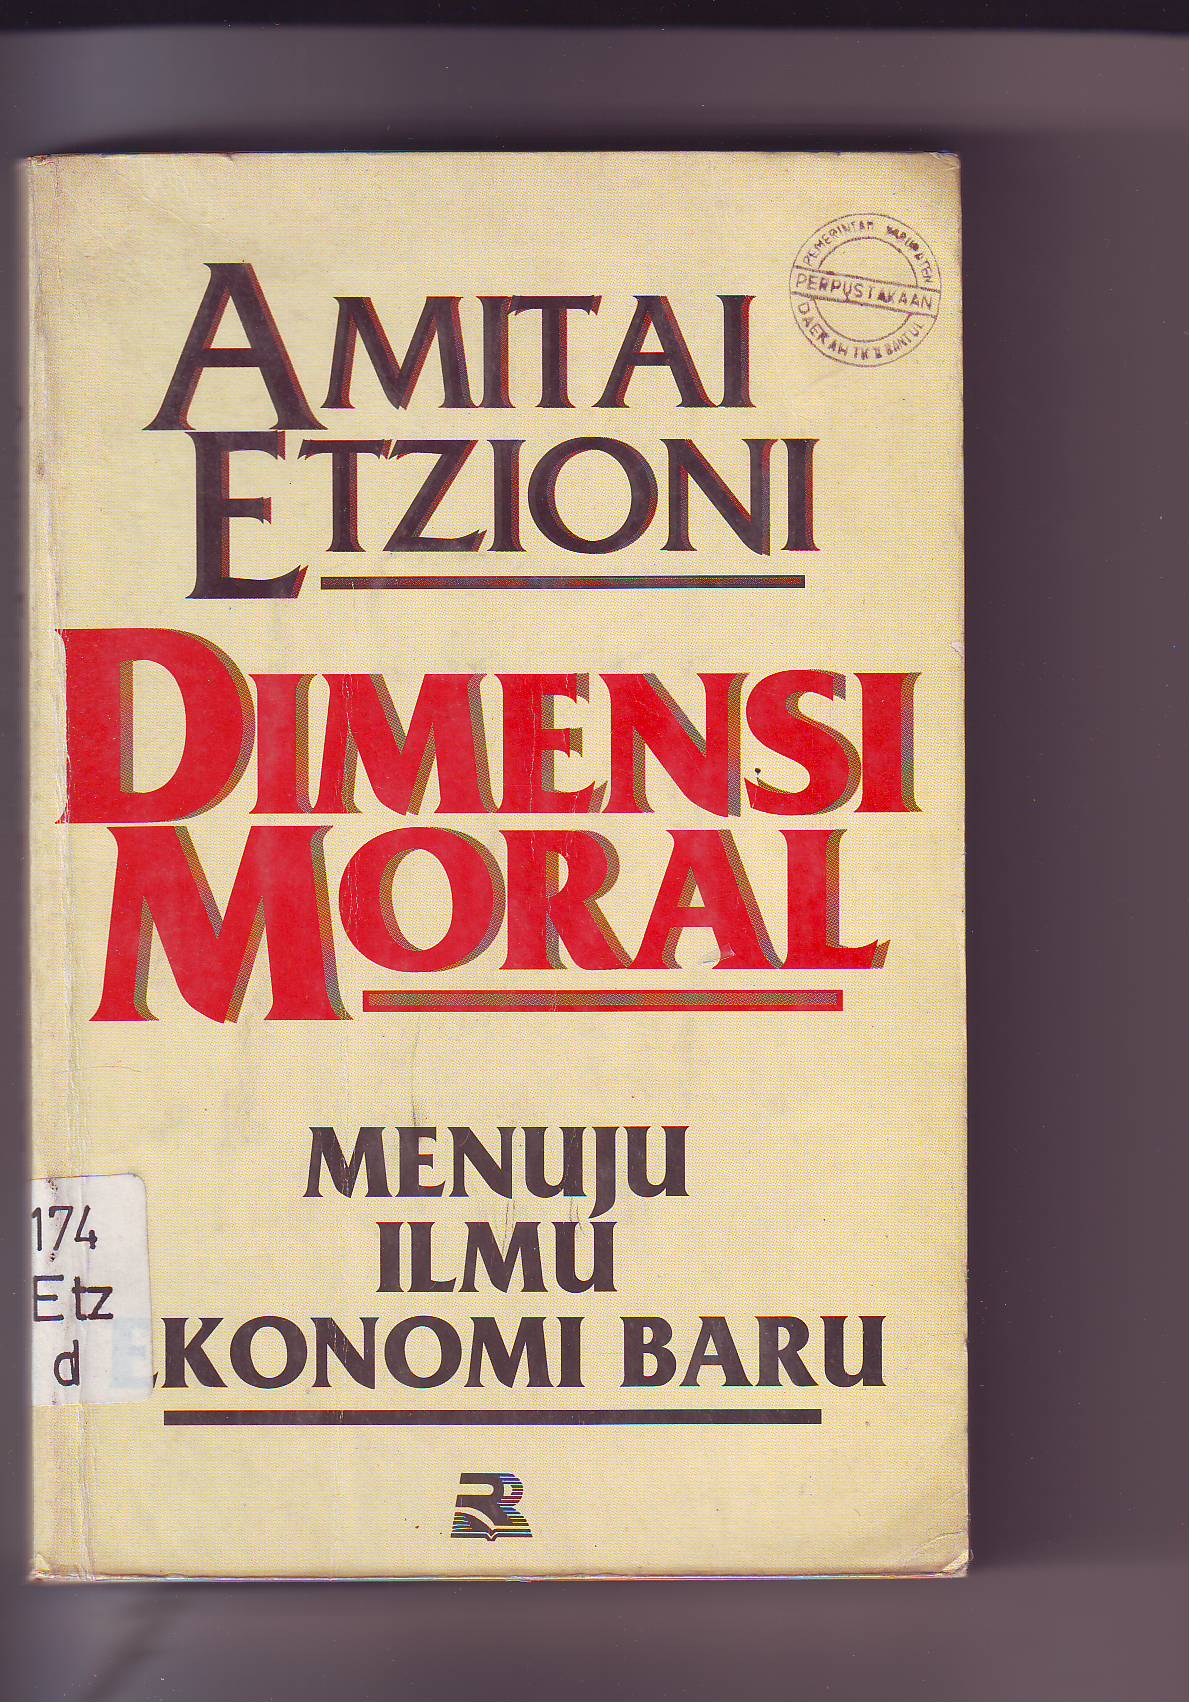 Moral dimensi Moral